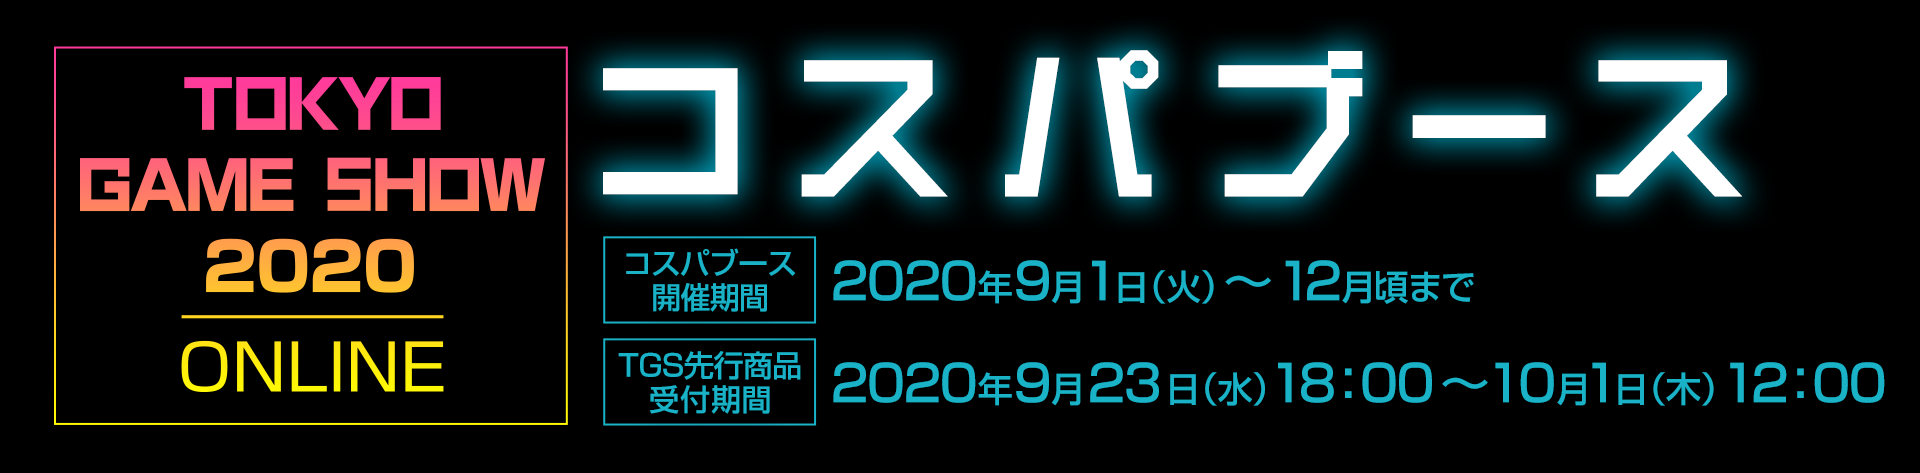 〈東京ゲームショウ2020 | オンライン〉コスパのグッズ販売情報